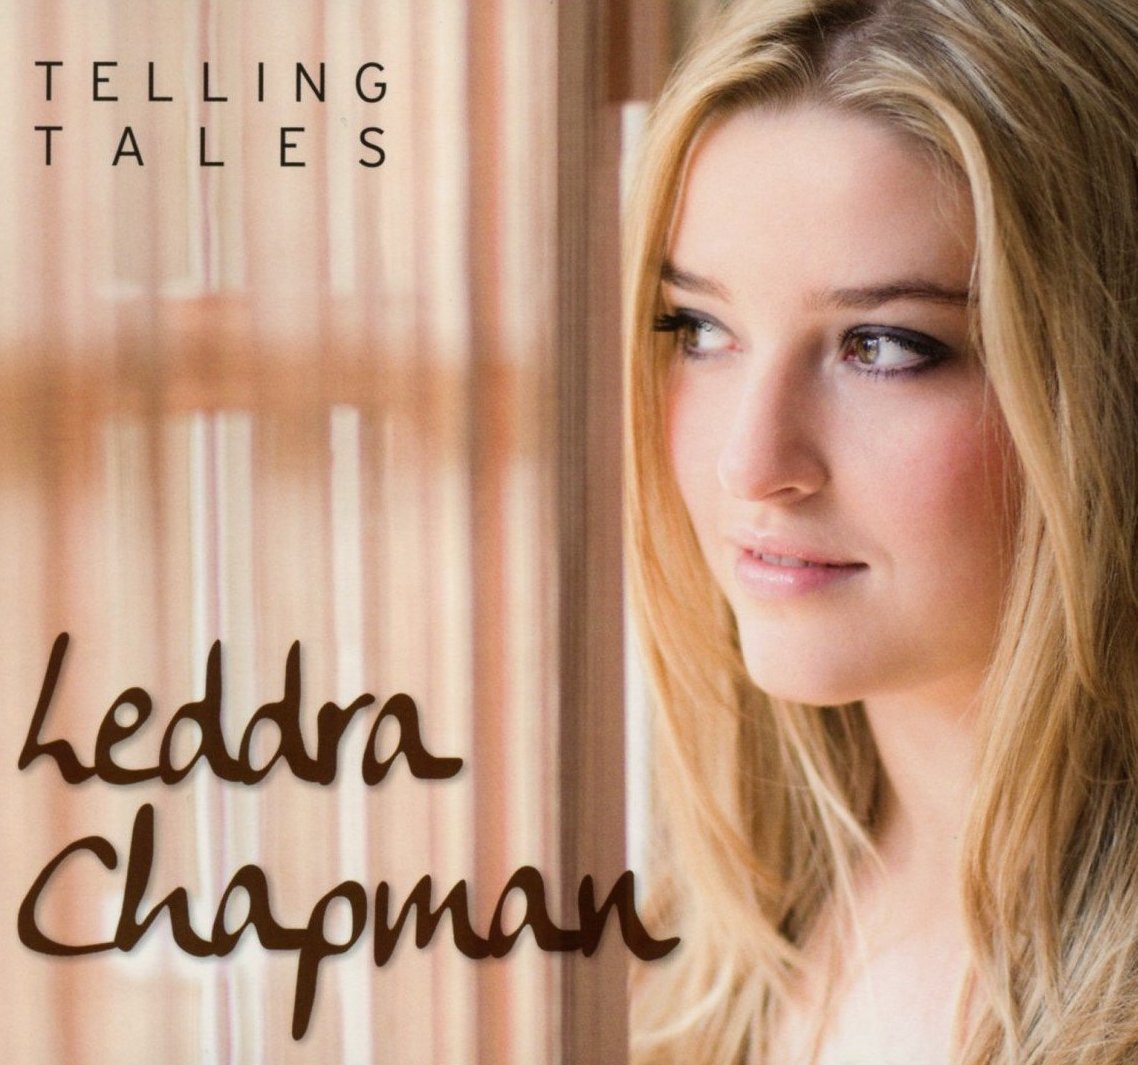 Die britische Songwriterin Leddra Chapmann will mit ihrem Debüt “Telling Tales” jetzt im deutschsprachigen Raum durchstarten